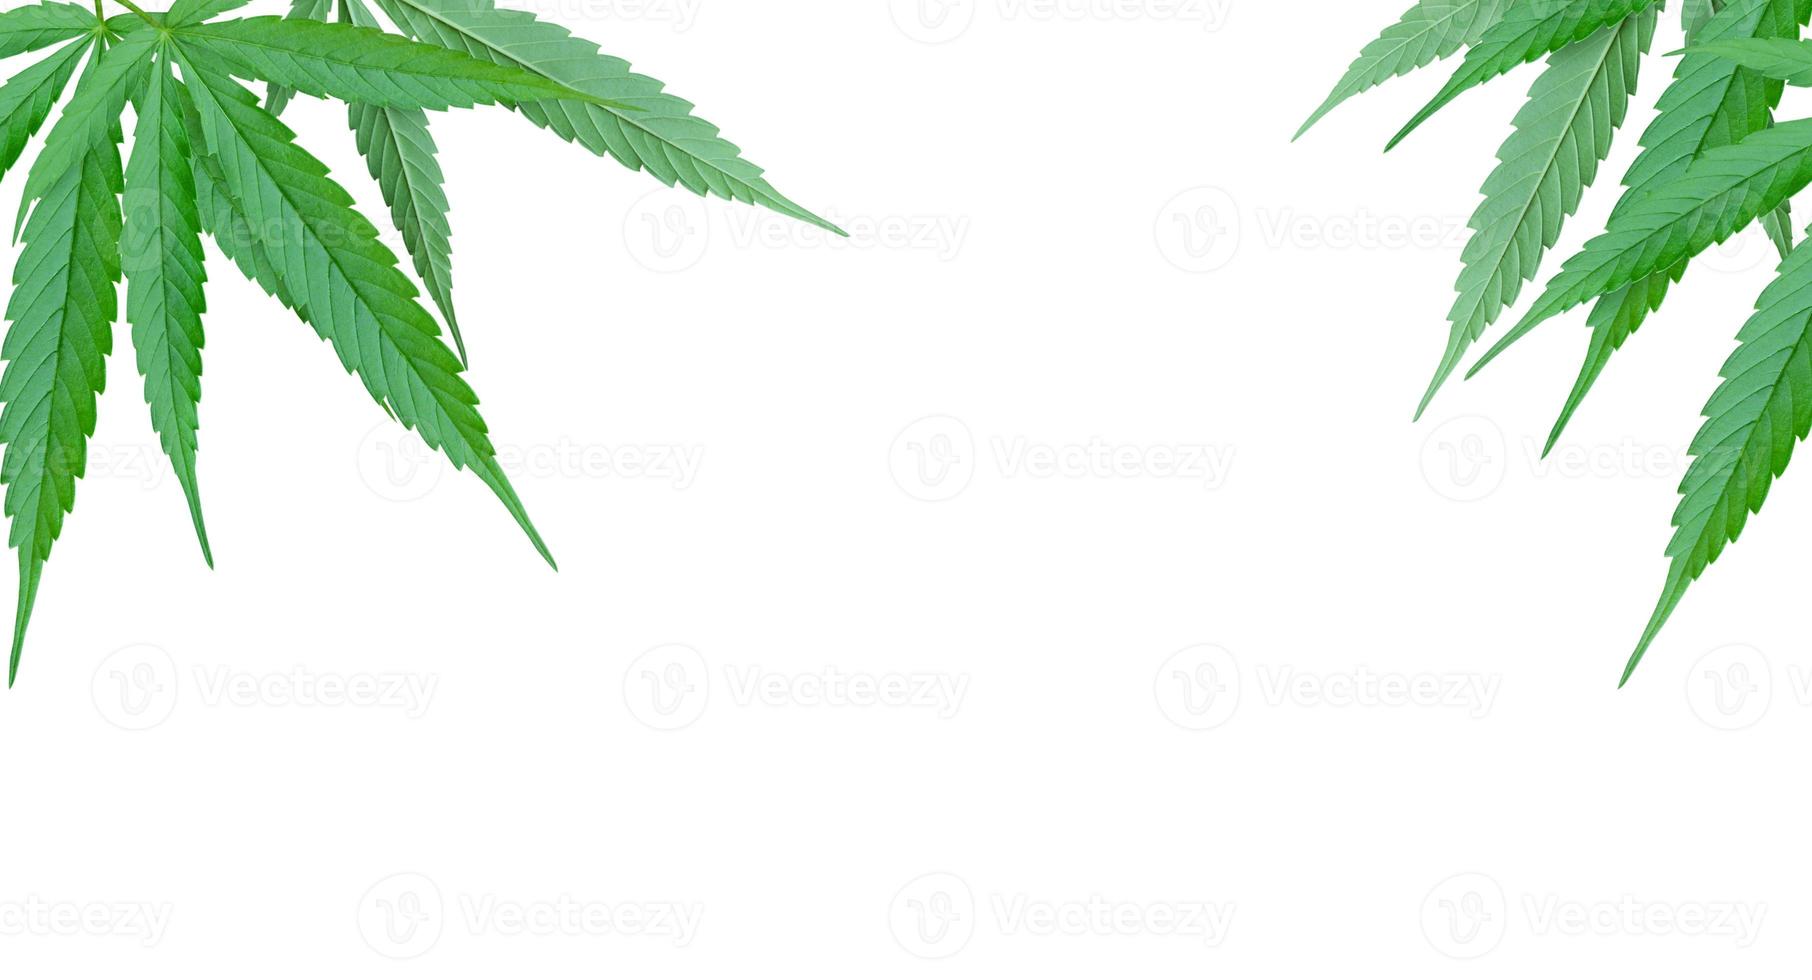 Cannabisblatt isoliert auf weißem Hintergrund foto